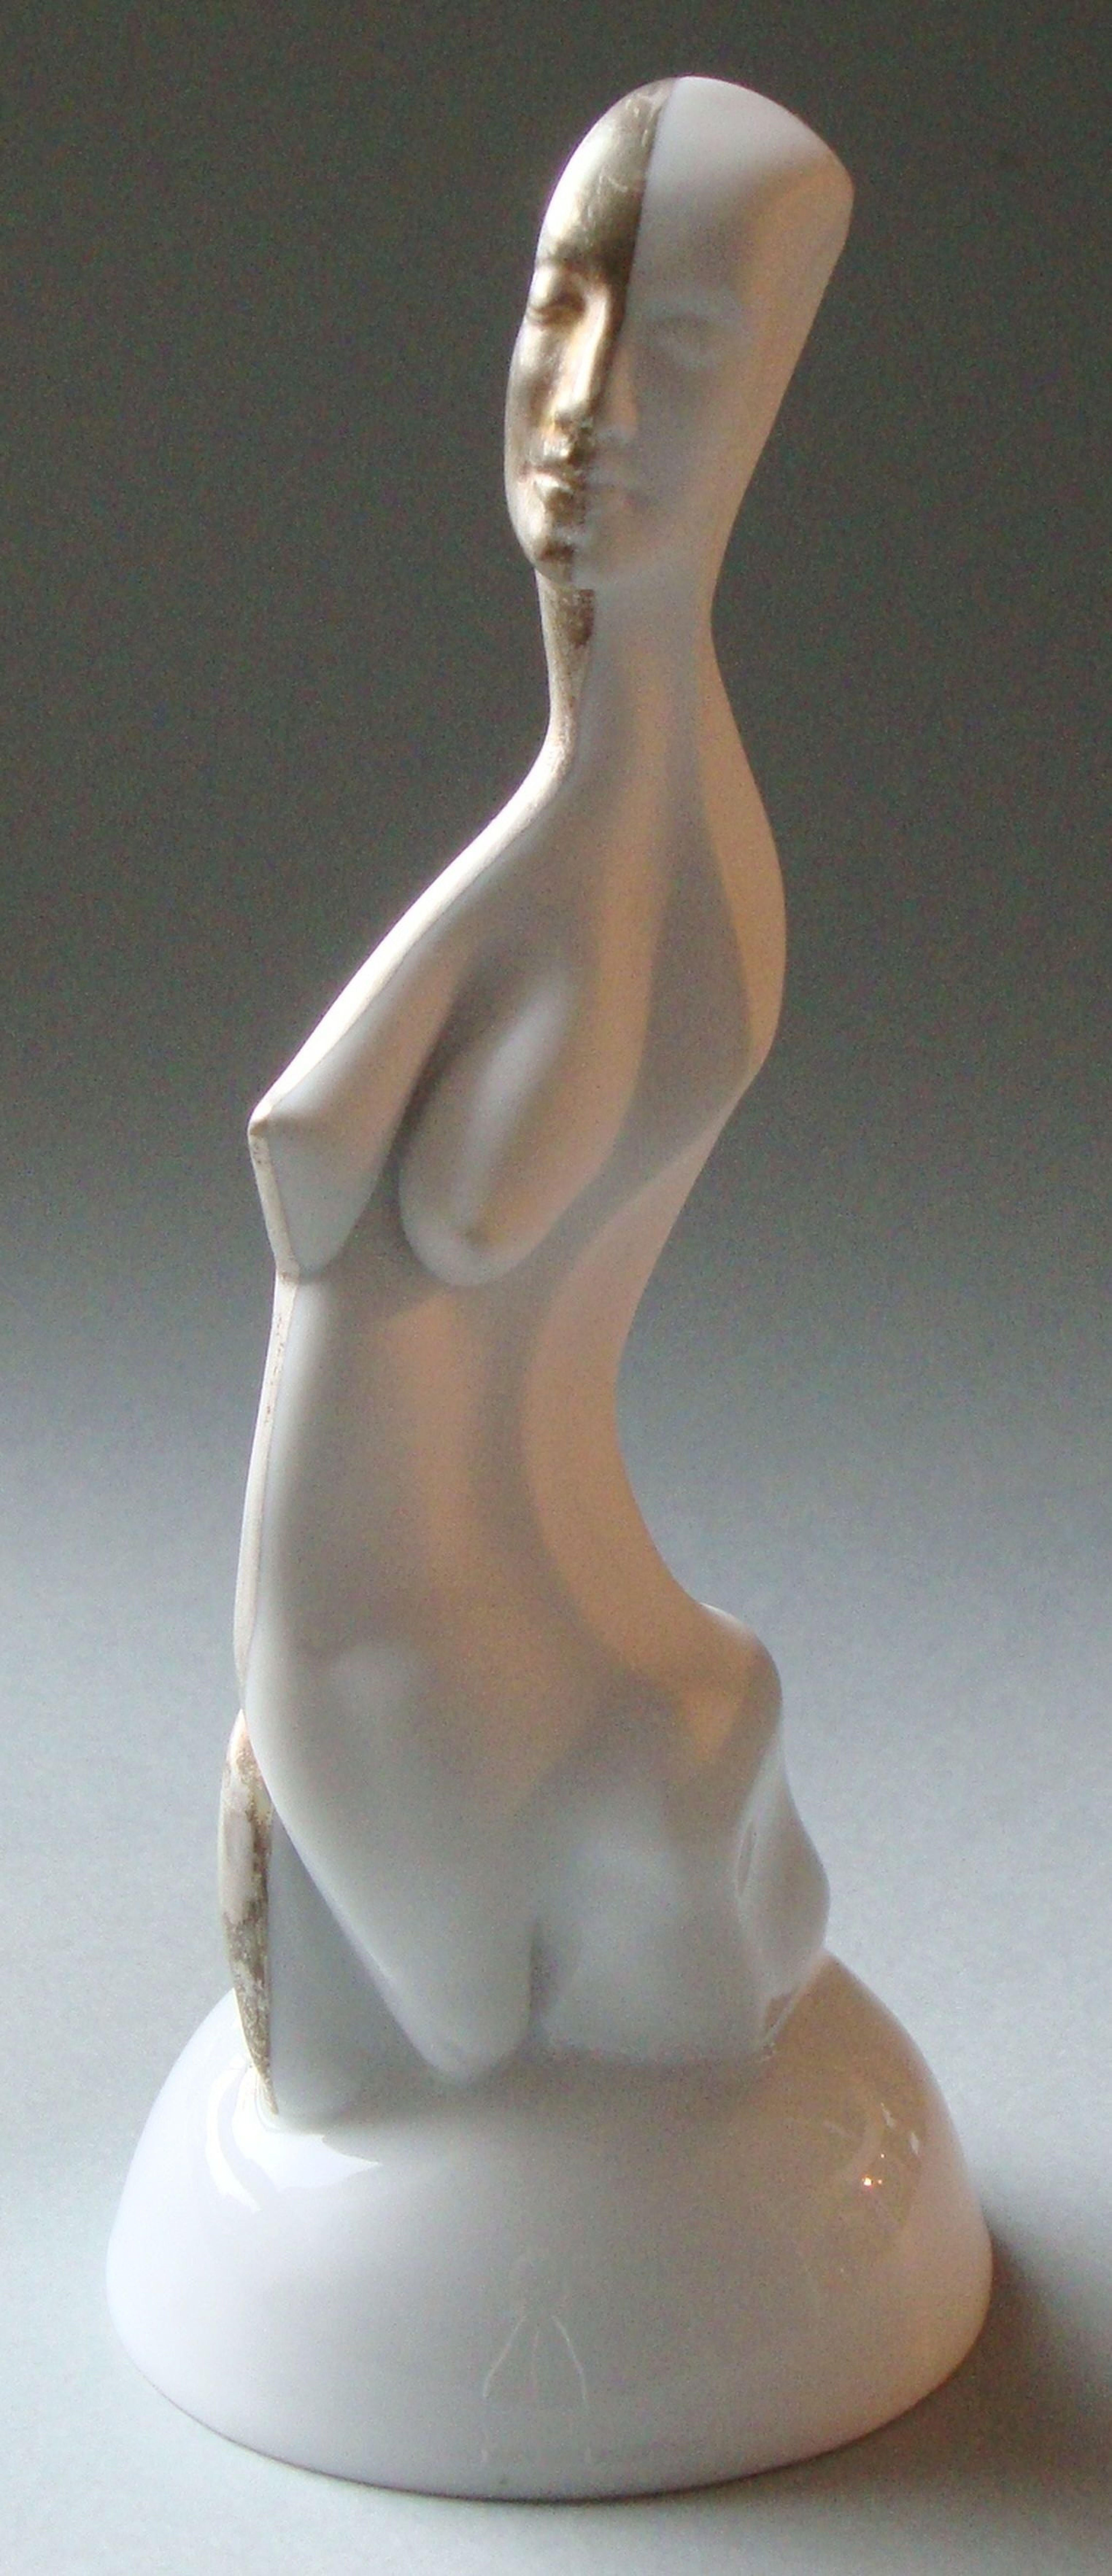 Frauenfigur auf einem Podest  Porzellan, Silber, H 20 cm (Zeitgenössisch), Sculpture, von Ilona Romule